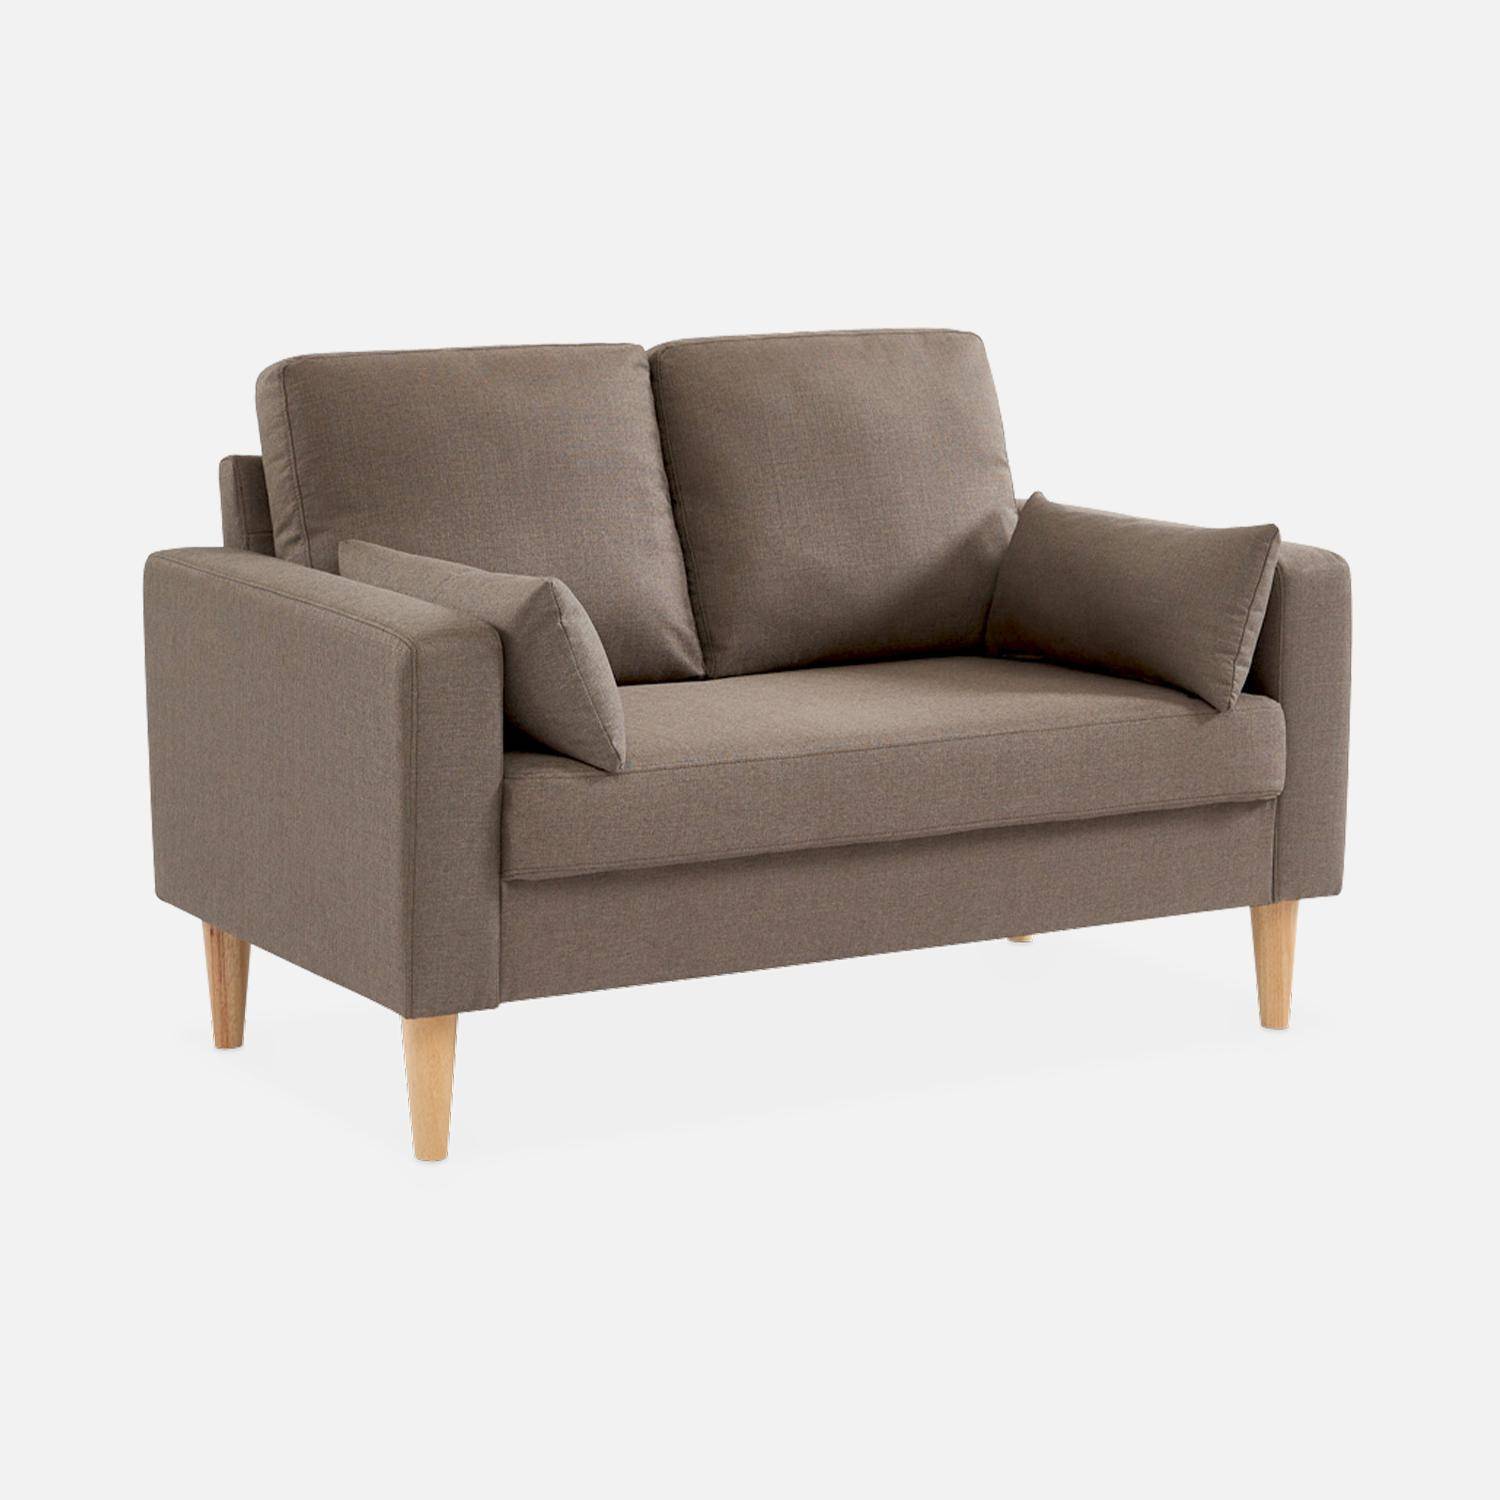 2-Sitz Sofa - Bjorn 2 - Braun, Gestell aus Eukalyptus, Bezug aus Polyester, Holzbeine, Sofa im skandinavischen Stil  Photo2